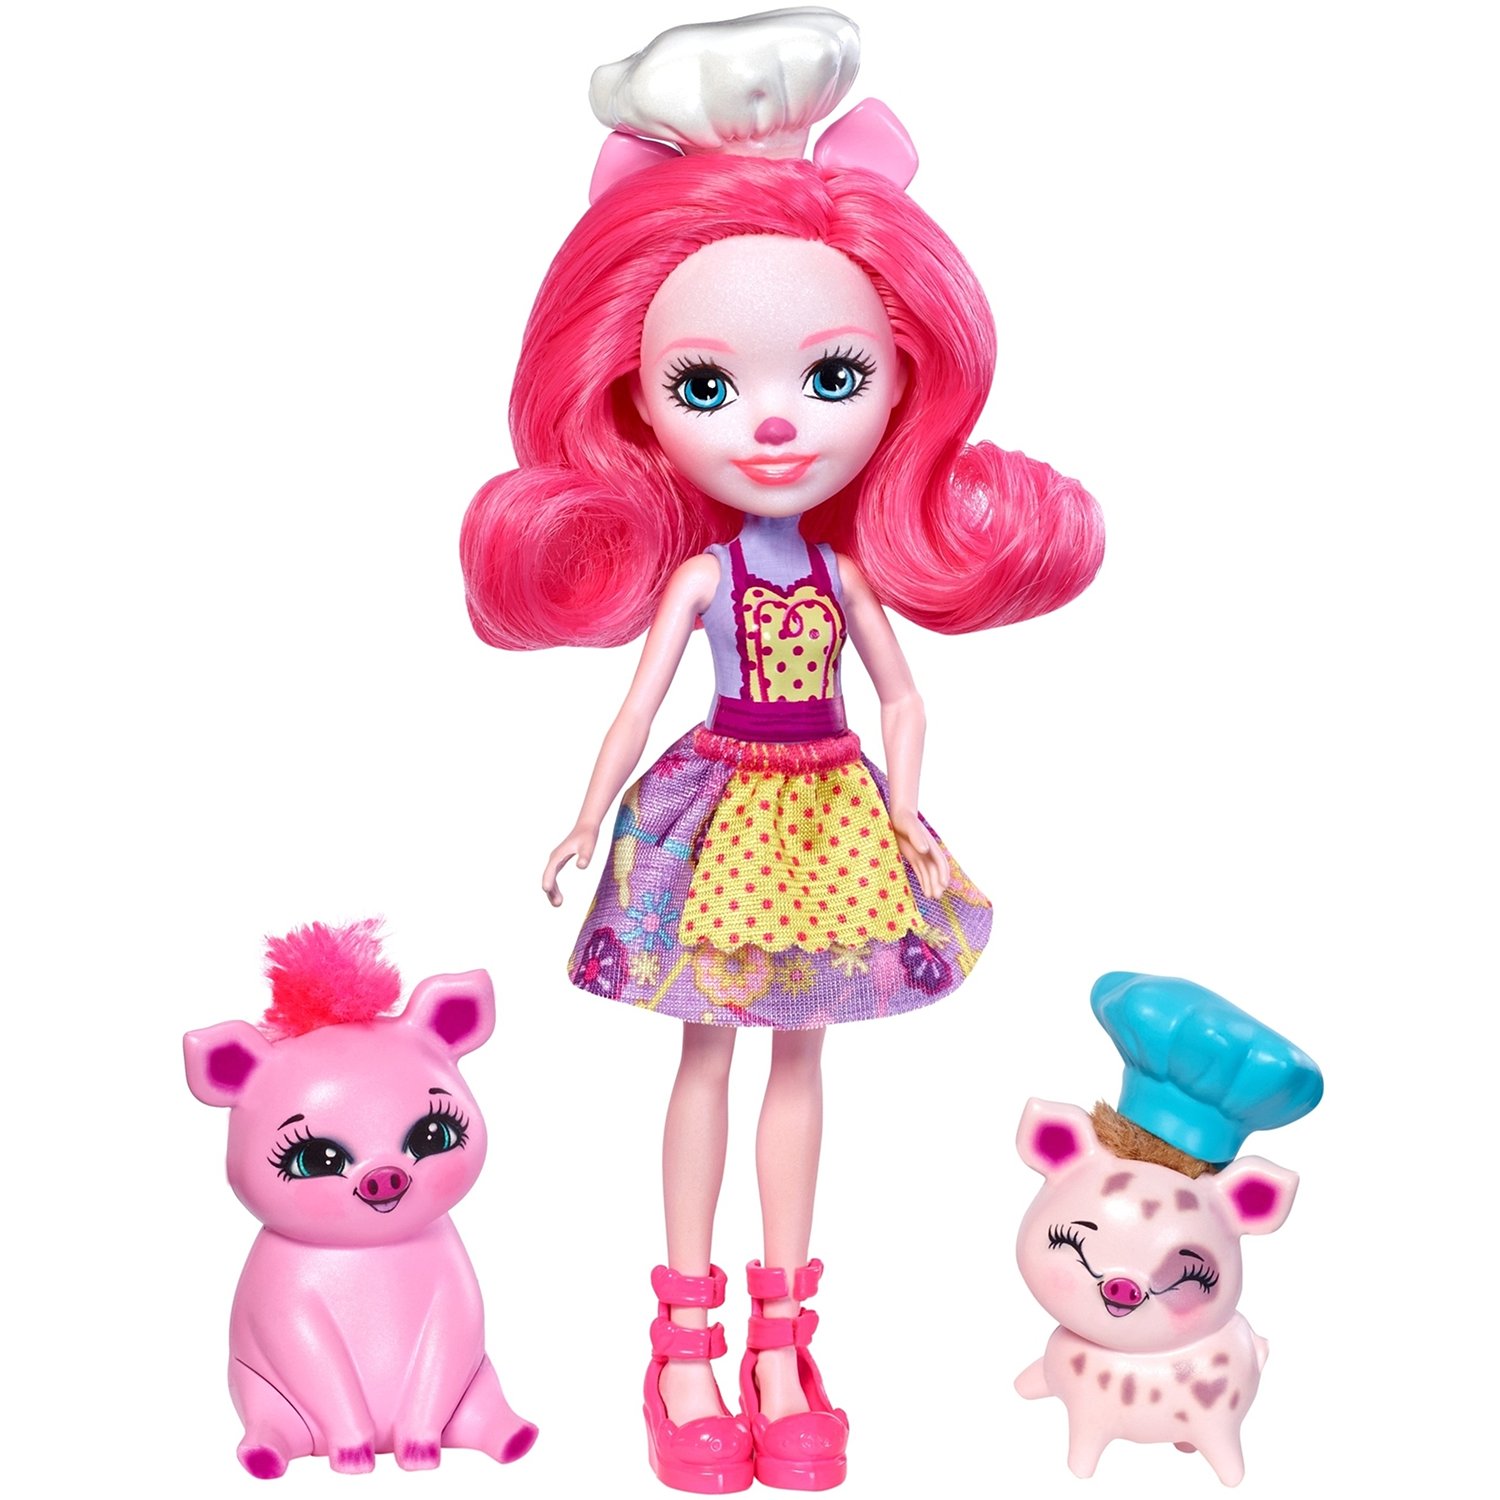 Фото энчантималс. Набор с куклой Enchantimals друзья пекари Пэтти Пиг, 15 см, fjj28. Enchantimals куклы Свинка. Энчантималс куклы Свинка. Энчантималс набор Свинка.